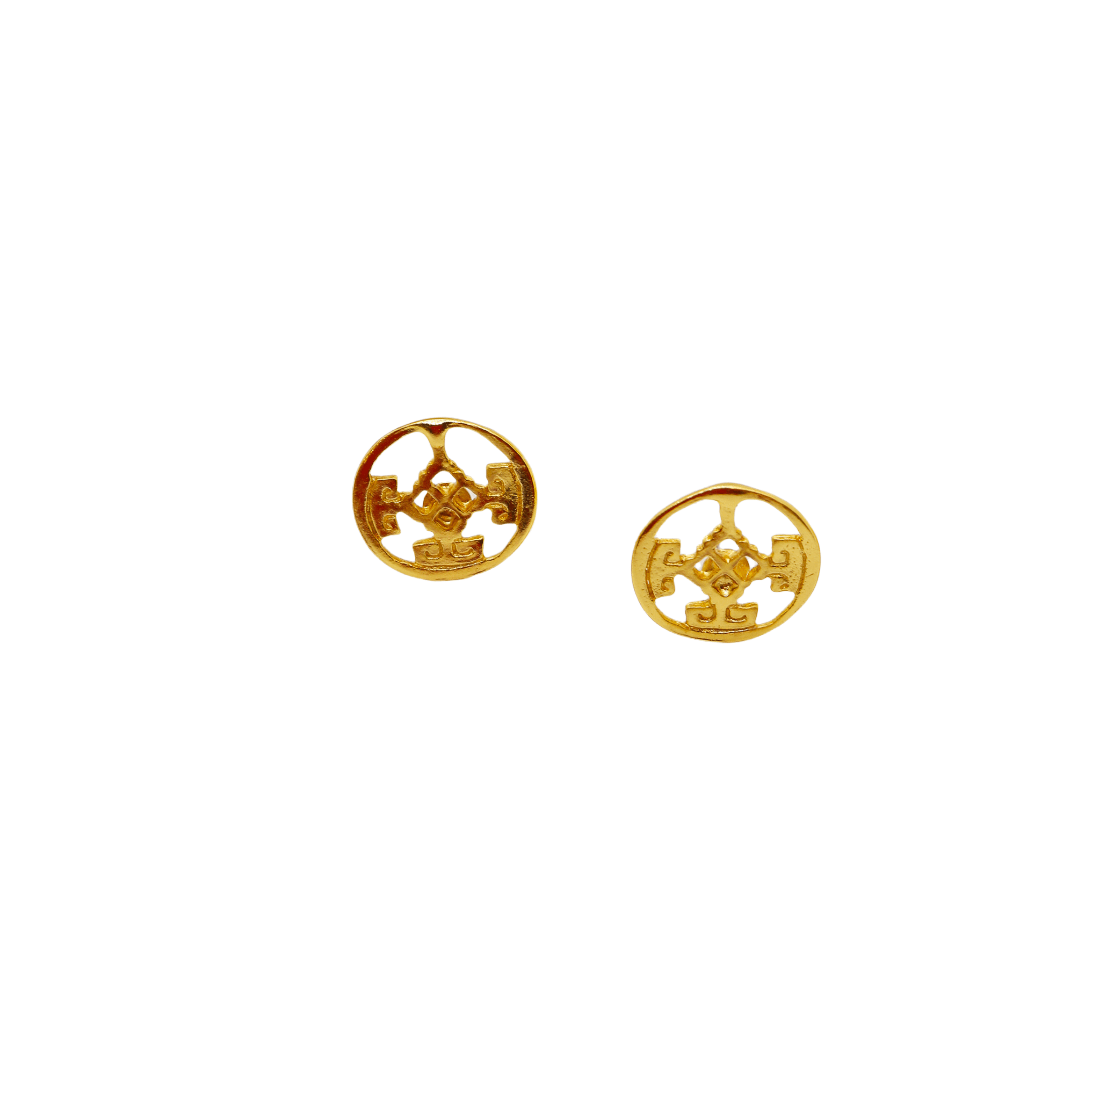 Tierralta Earrings - Origin Colombia